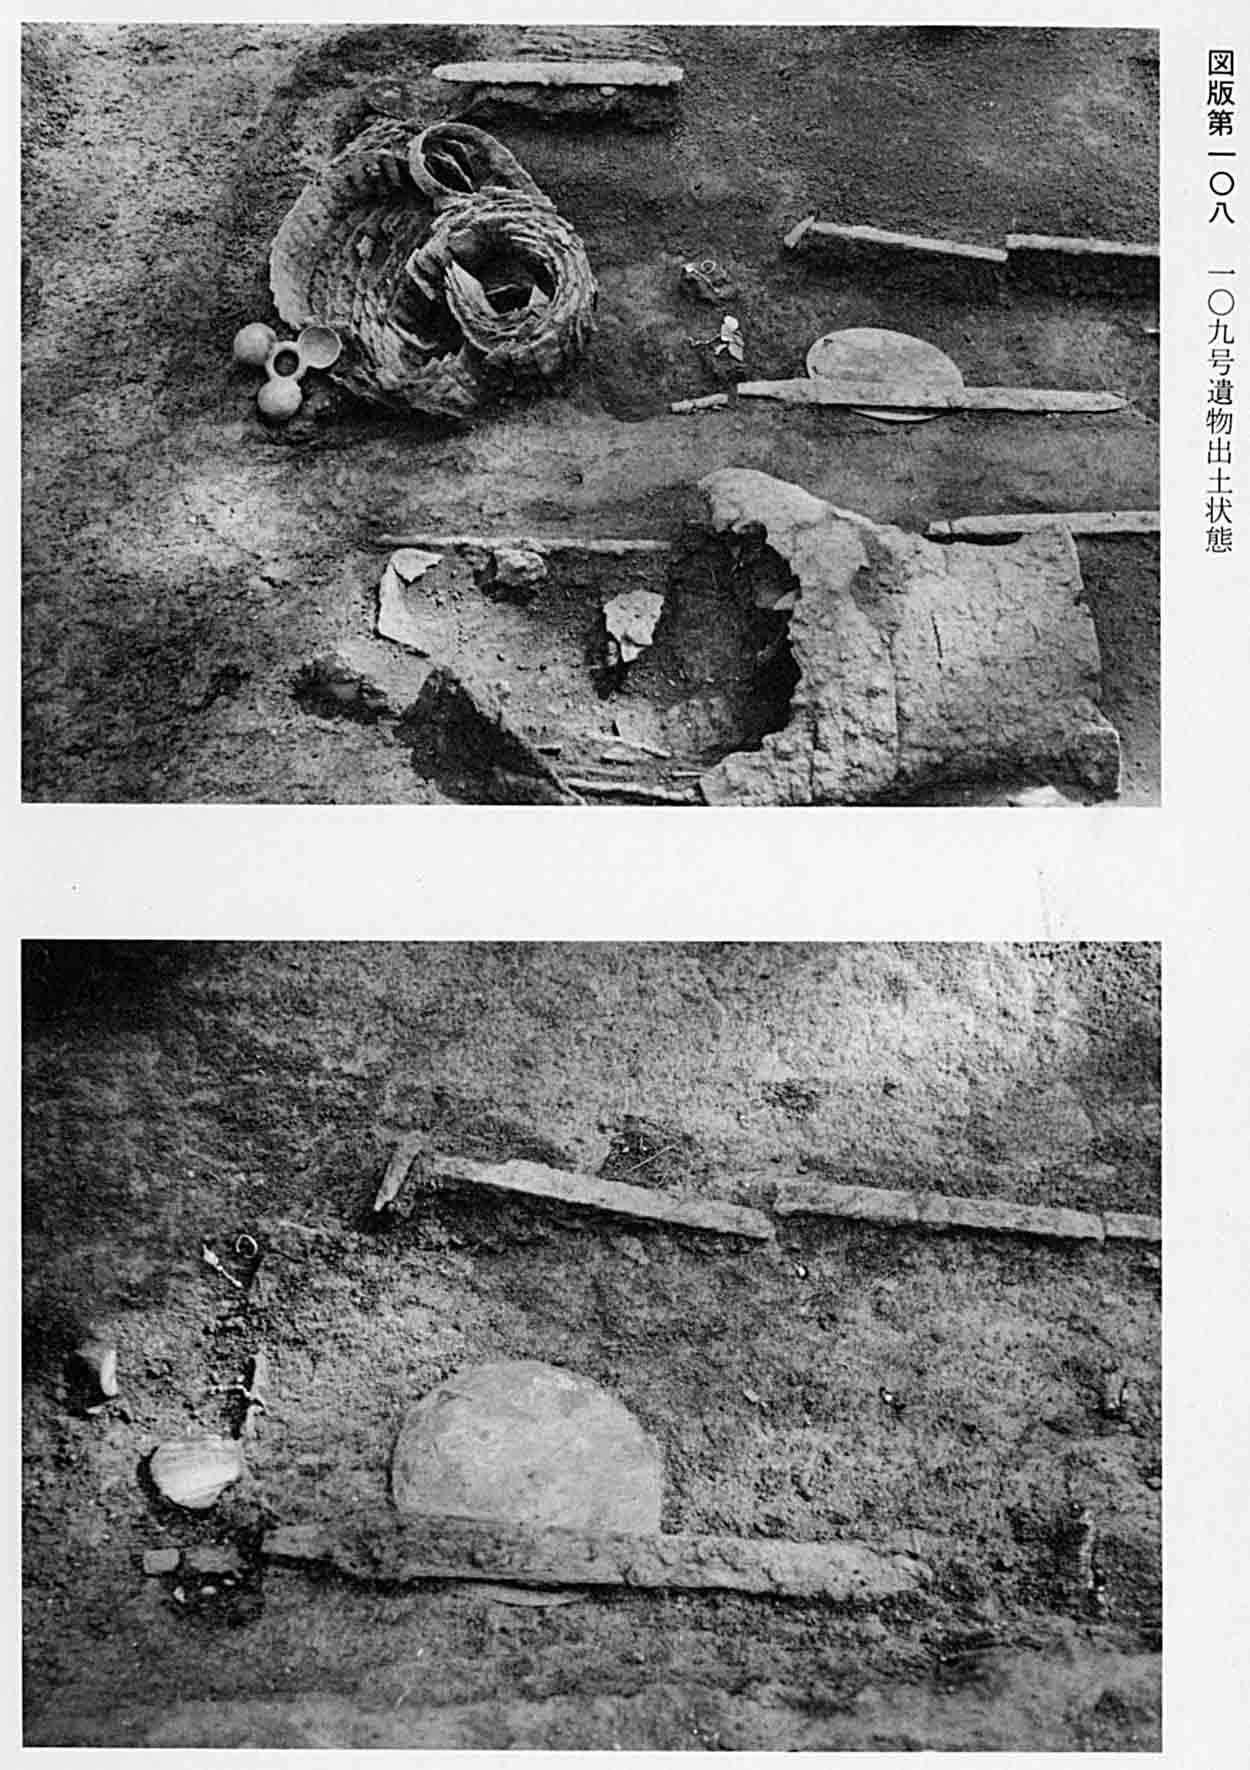 上、壺やかごが並べられている 下、剣が2本並べられている 図版108 109号遺物出土状態の2枚の写真